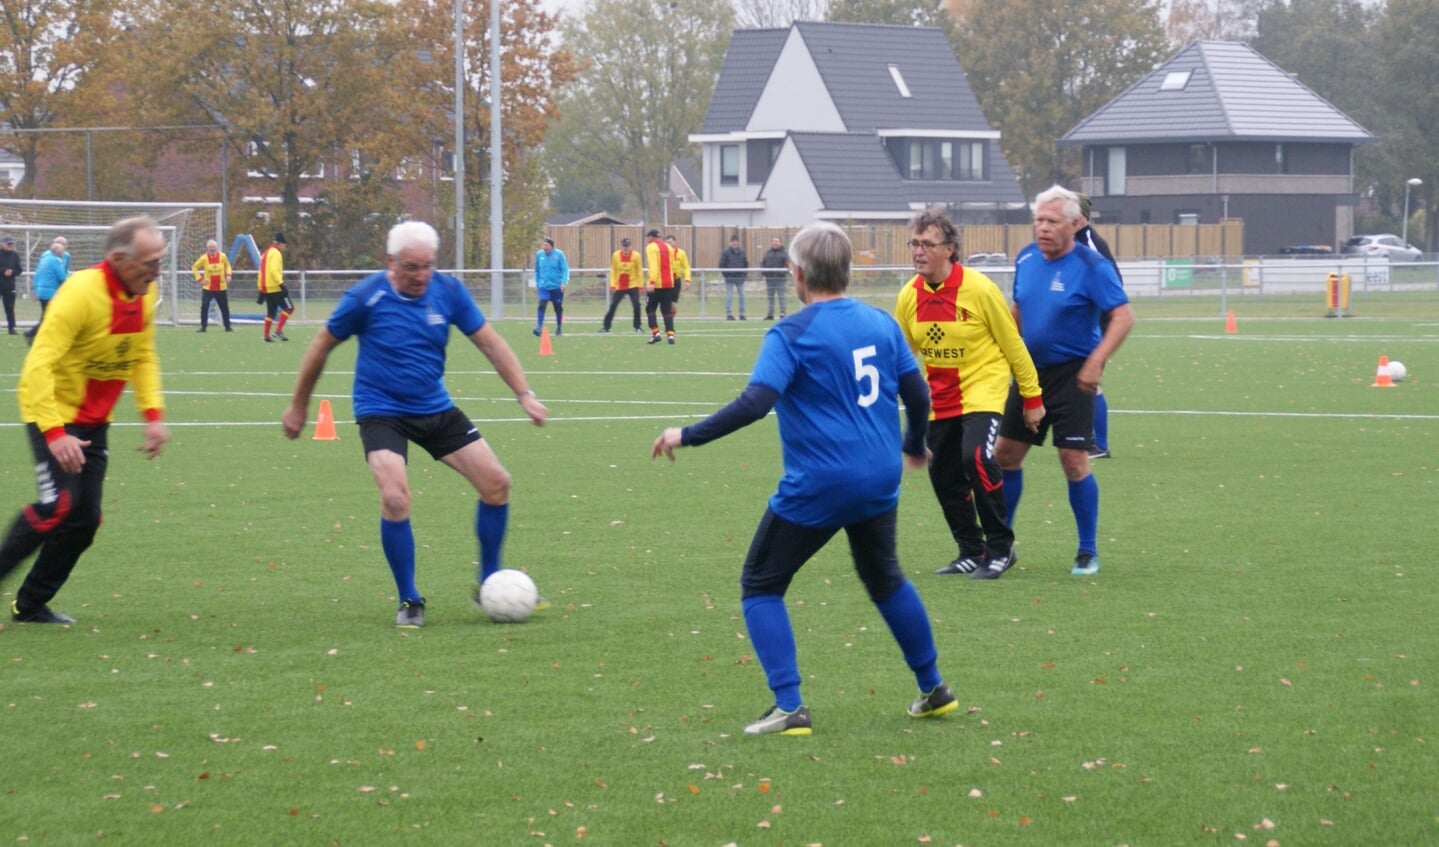 Jan Pit speelt de bal, rechts kijkt voorzitter Jan van Rosmalen toe